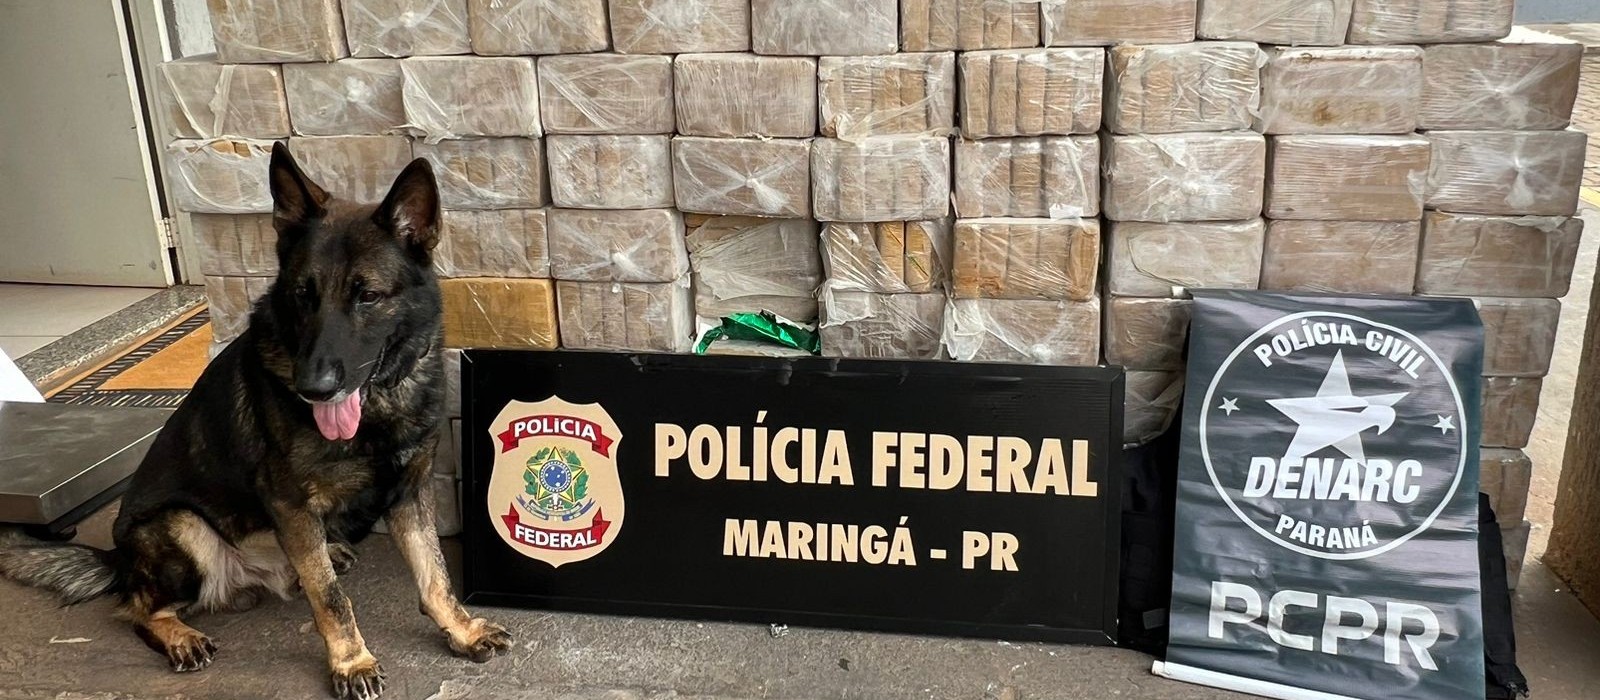 Ação da Polícia Federal e do Denarc apreende mais de 400 kg de cocaína 